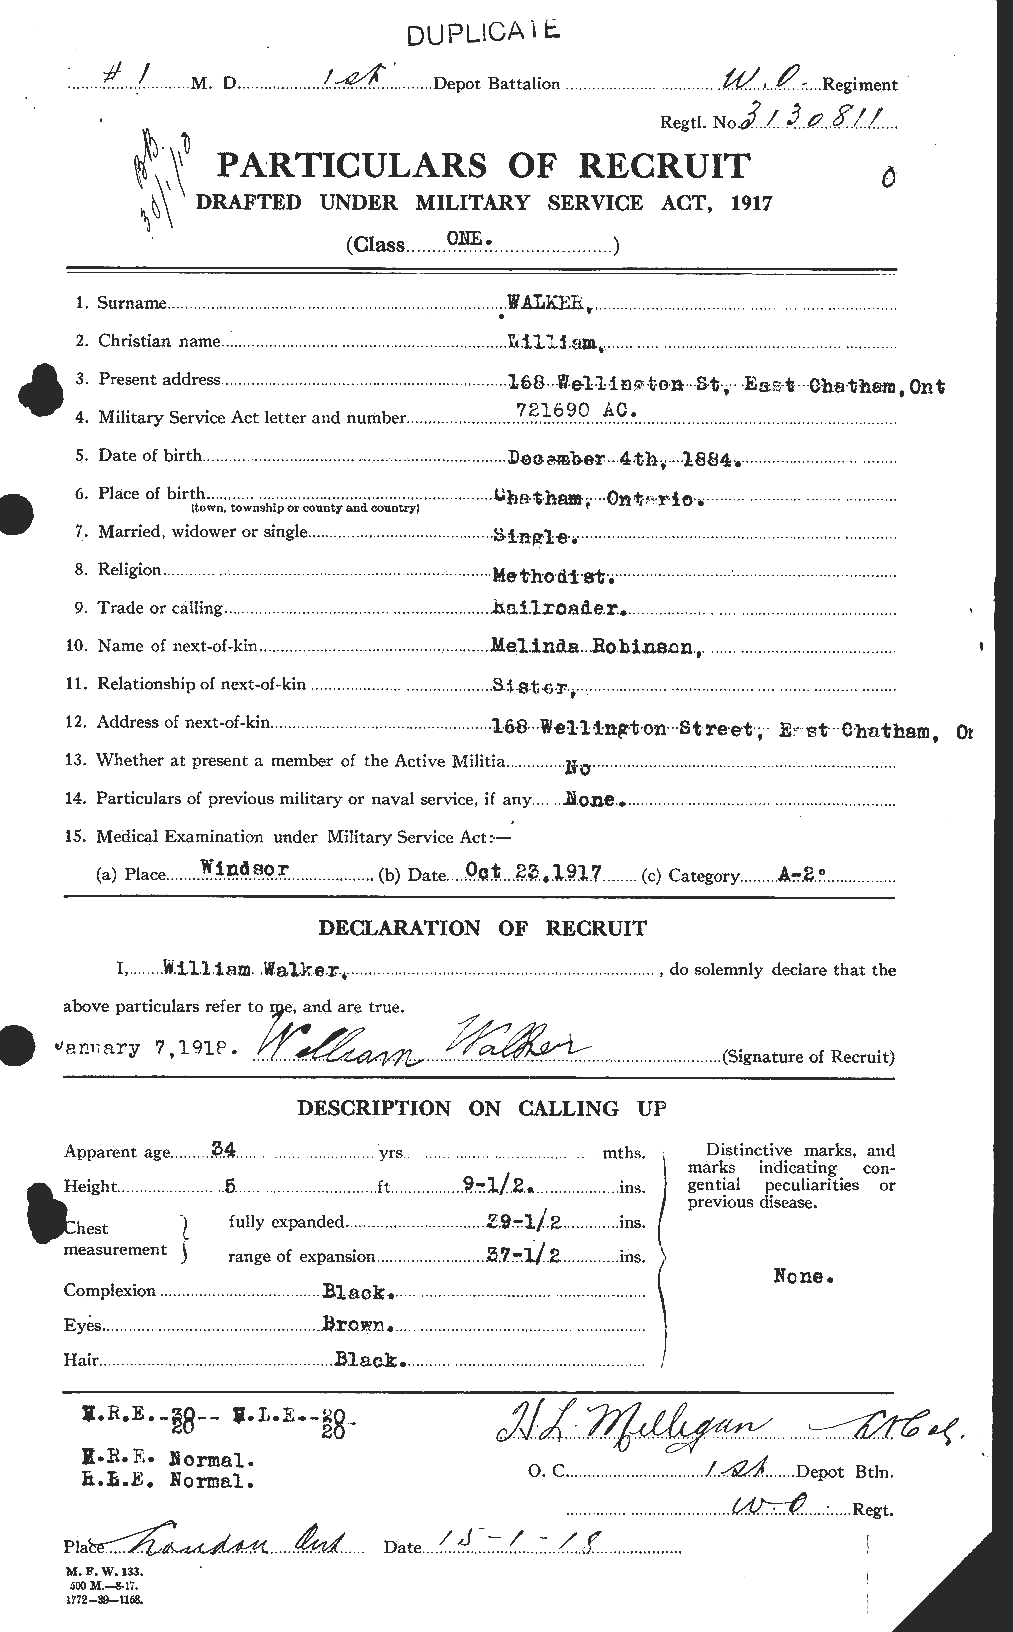 Dossiers du Personnel de la Première Guerre mondiale - CEC 655915a